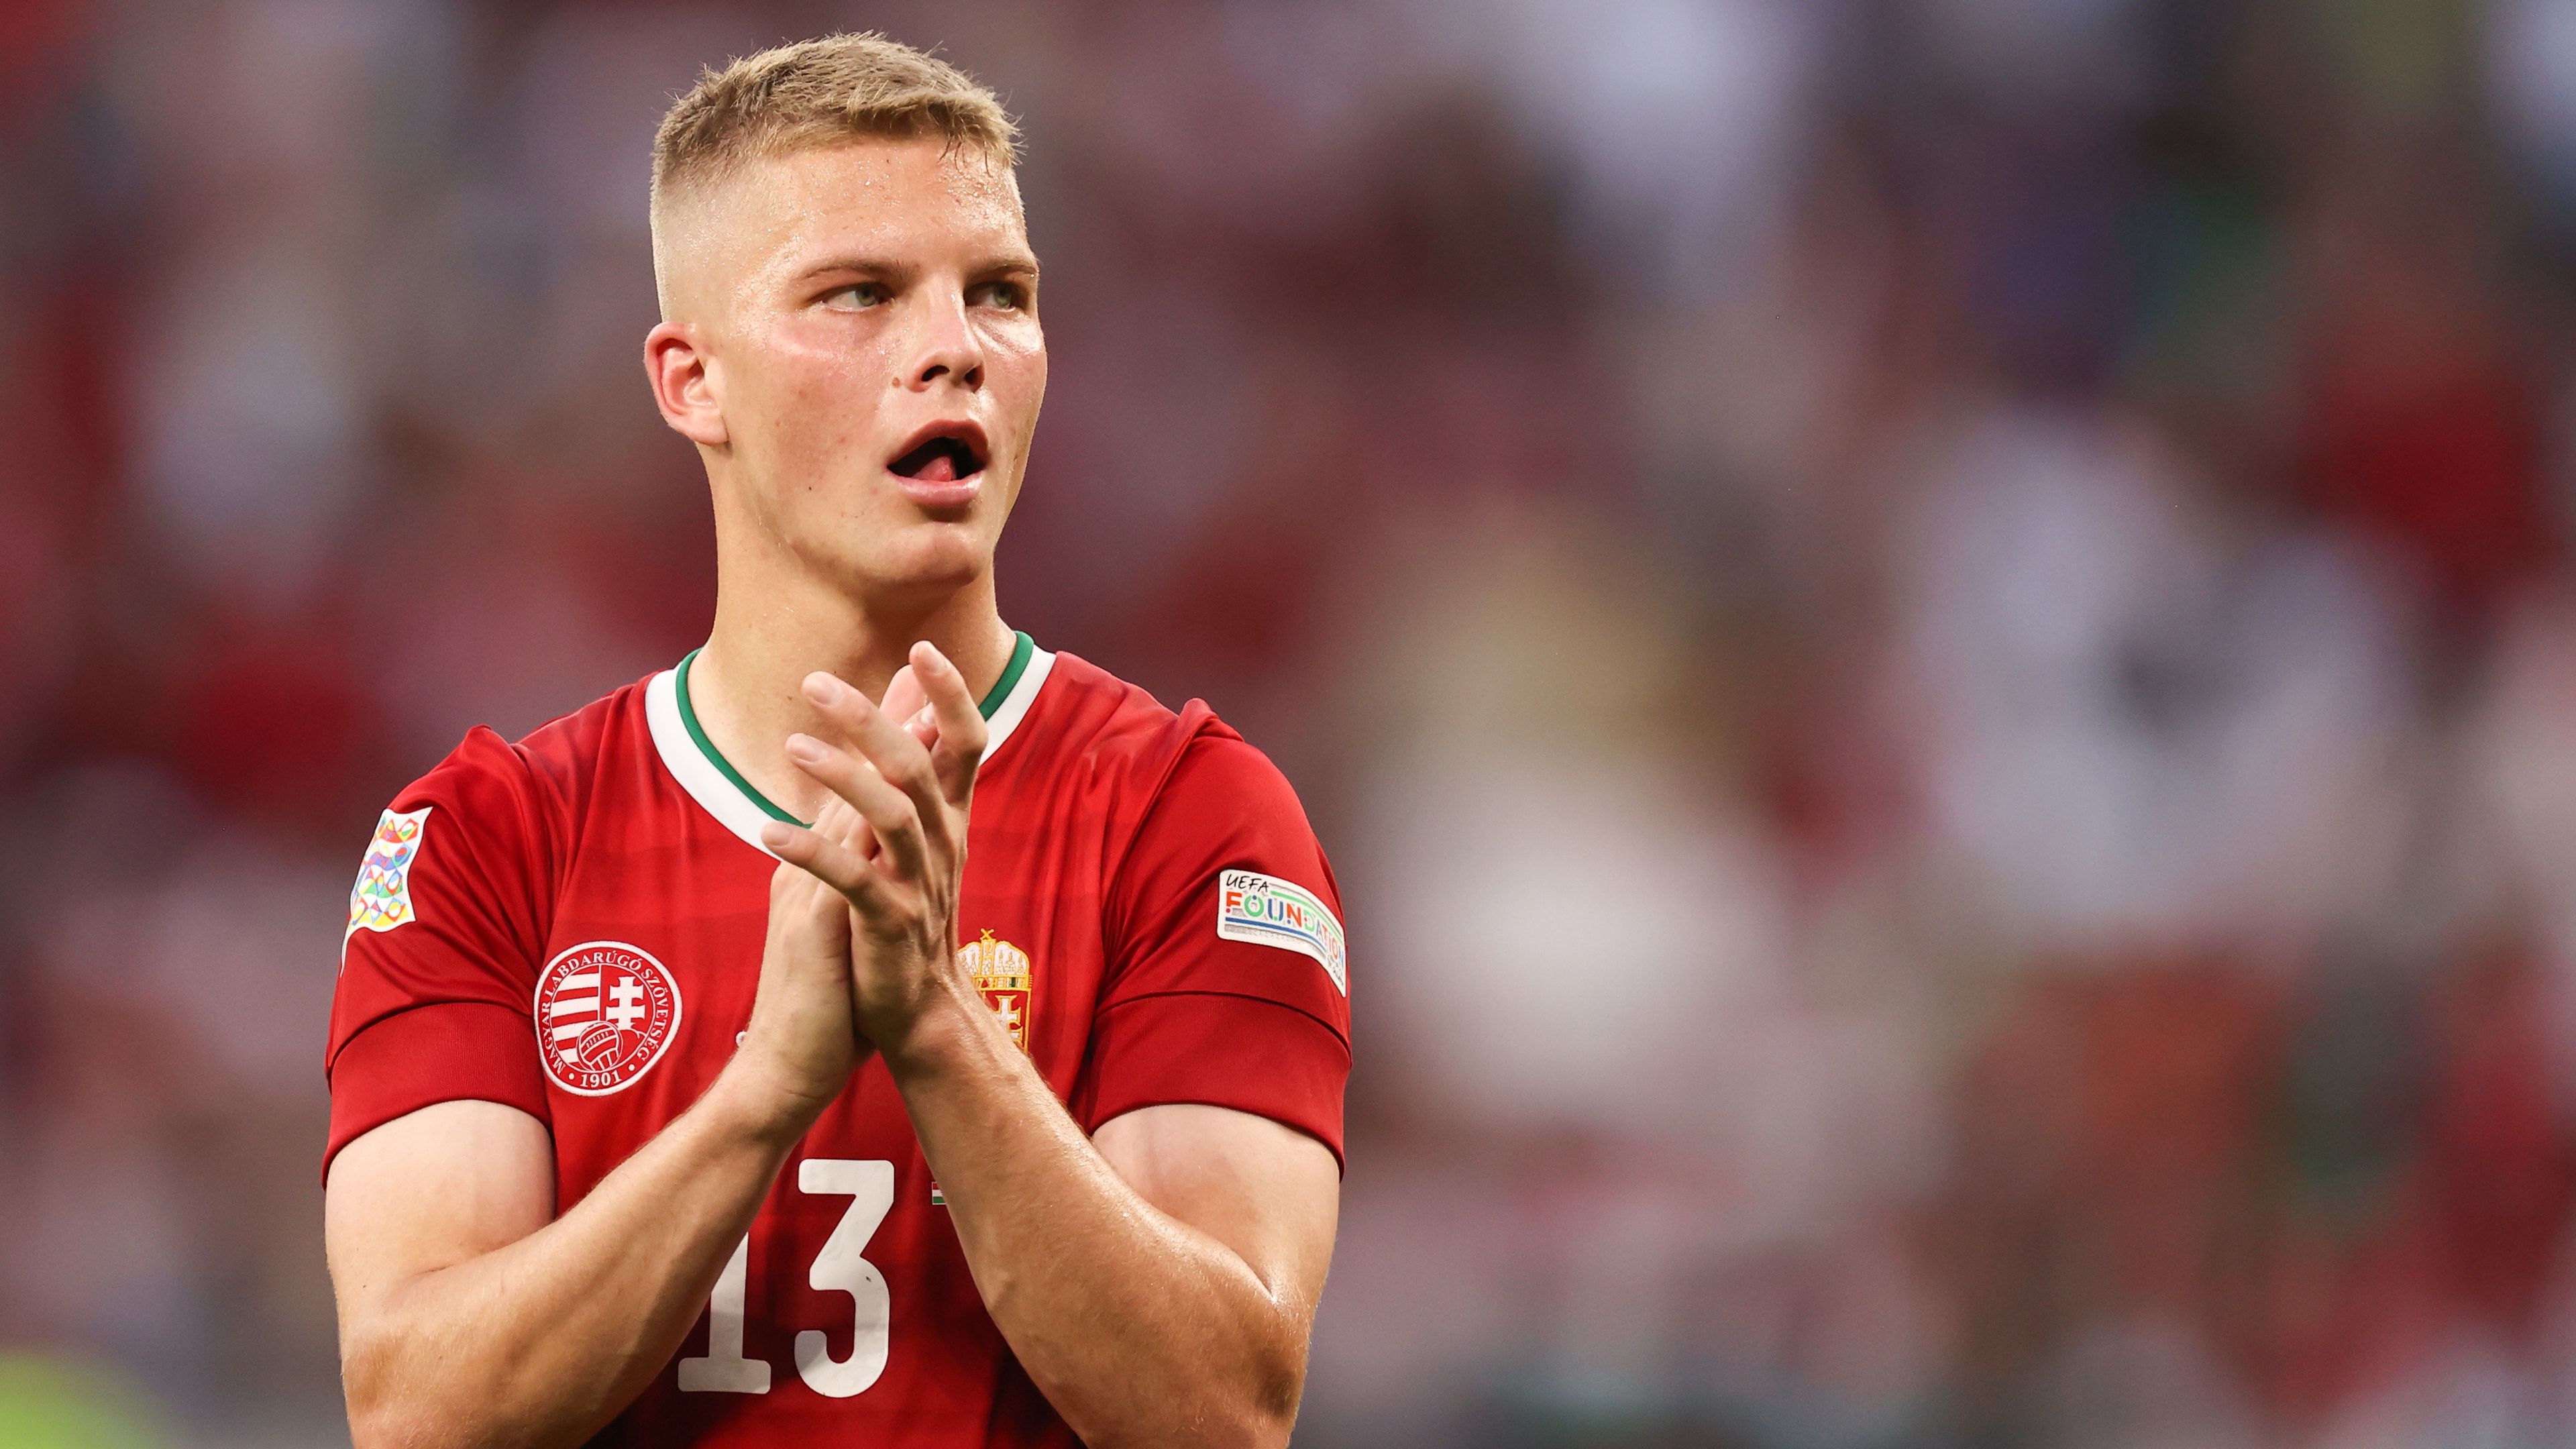 Megdöbbentő vallomás: a magyar válogatott játékos majdnem befejezte a futballt – videóval